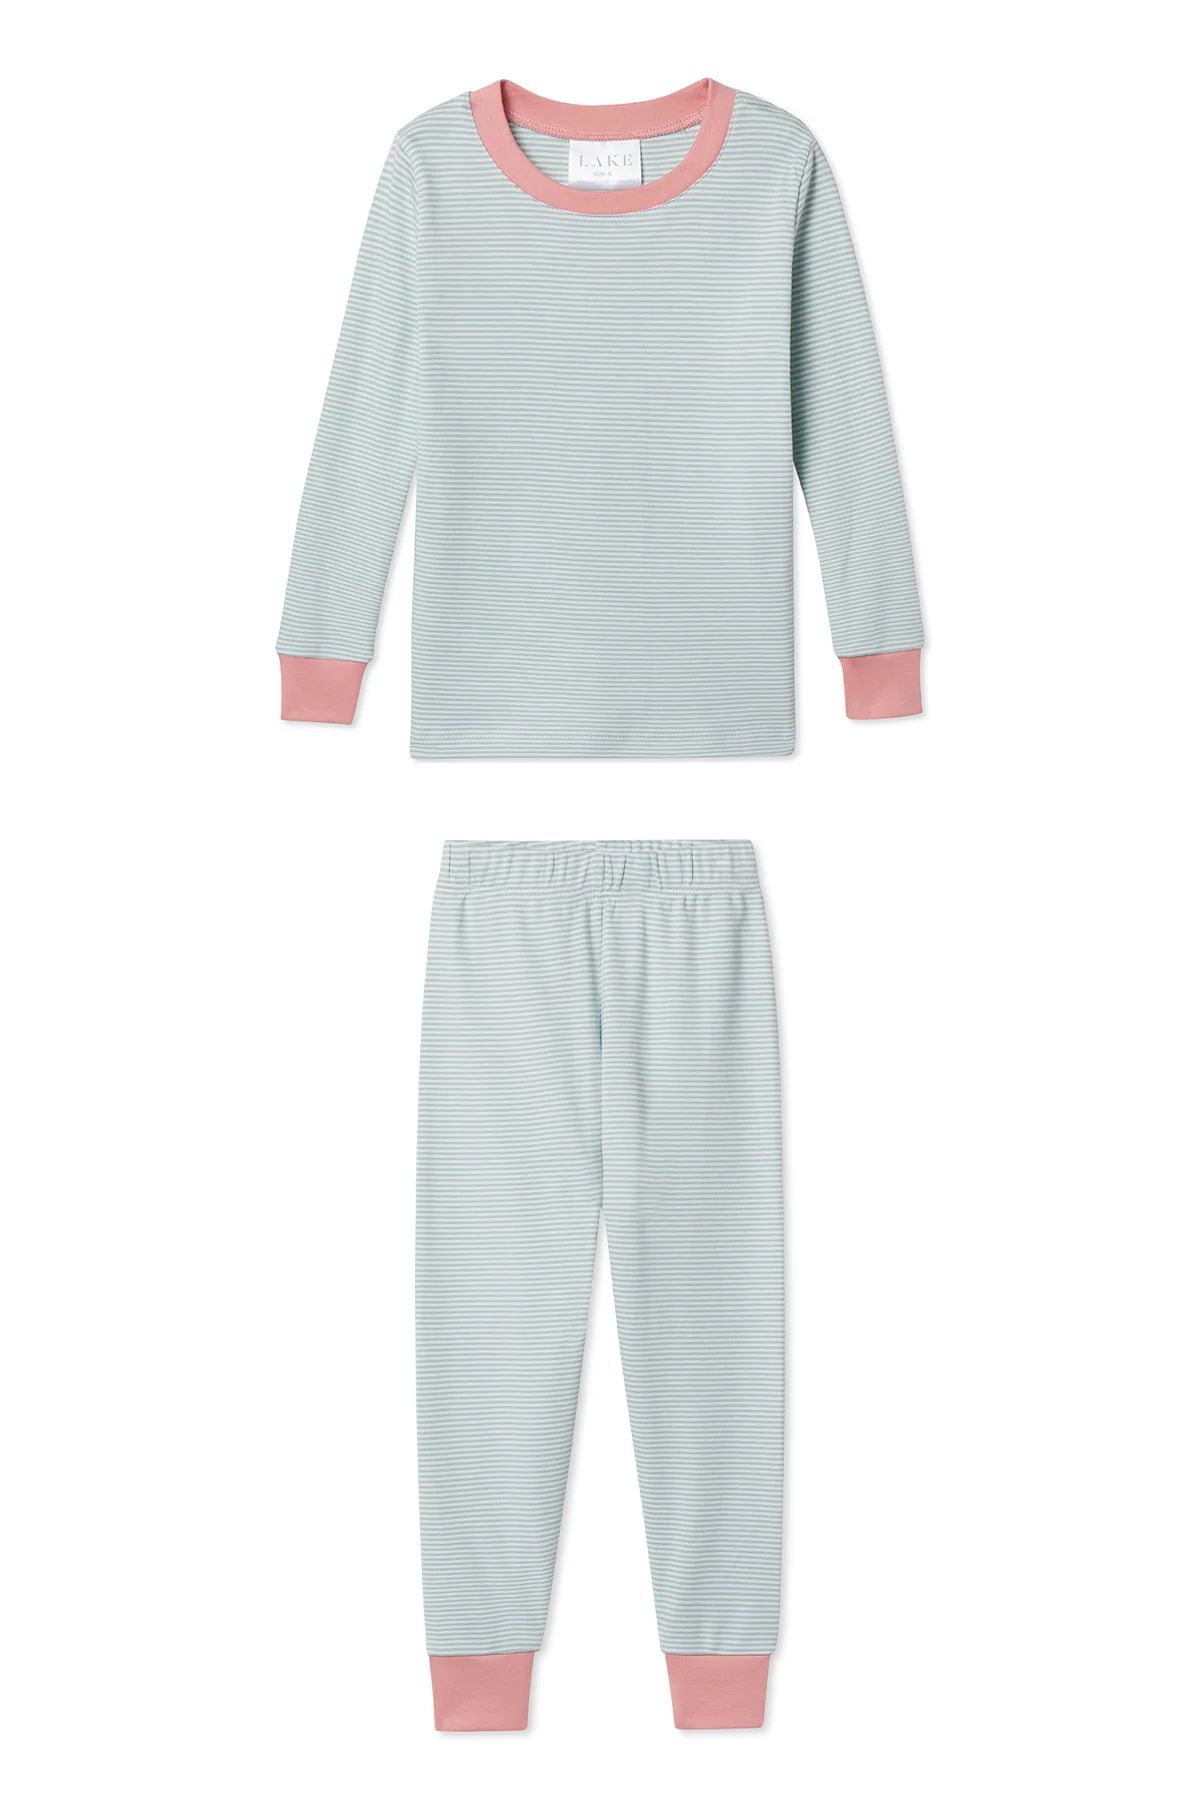 Organic Pima Kids Long-Long Set in Sage | LAKE Pajamas